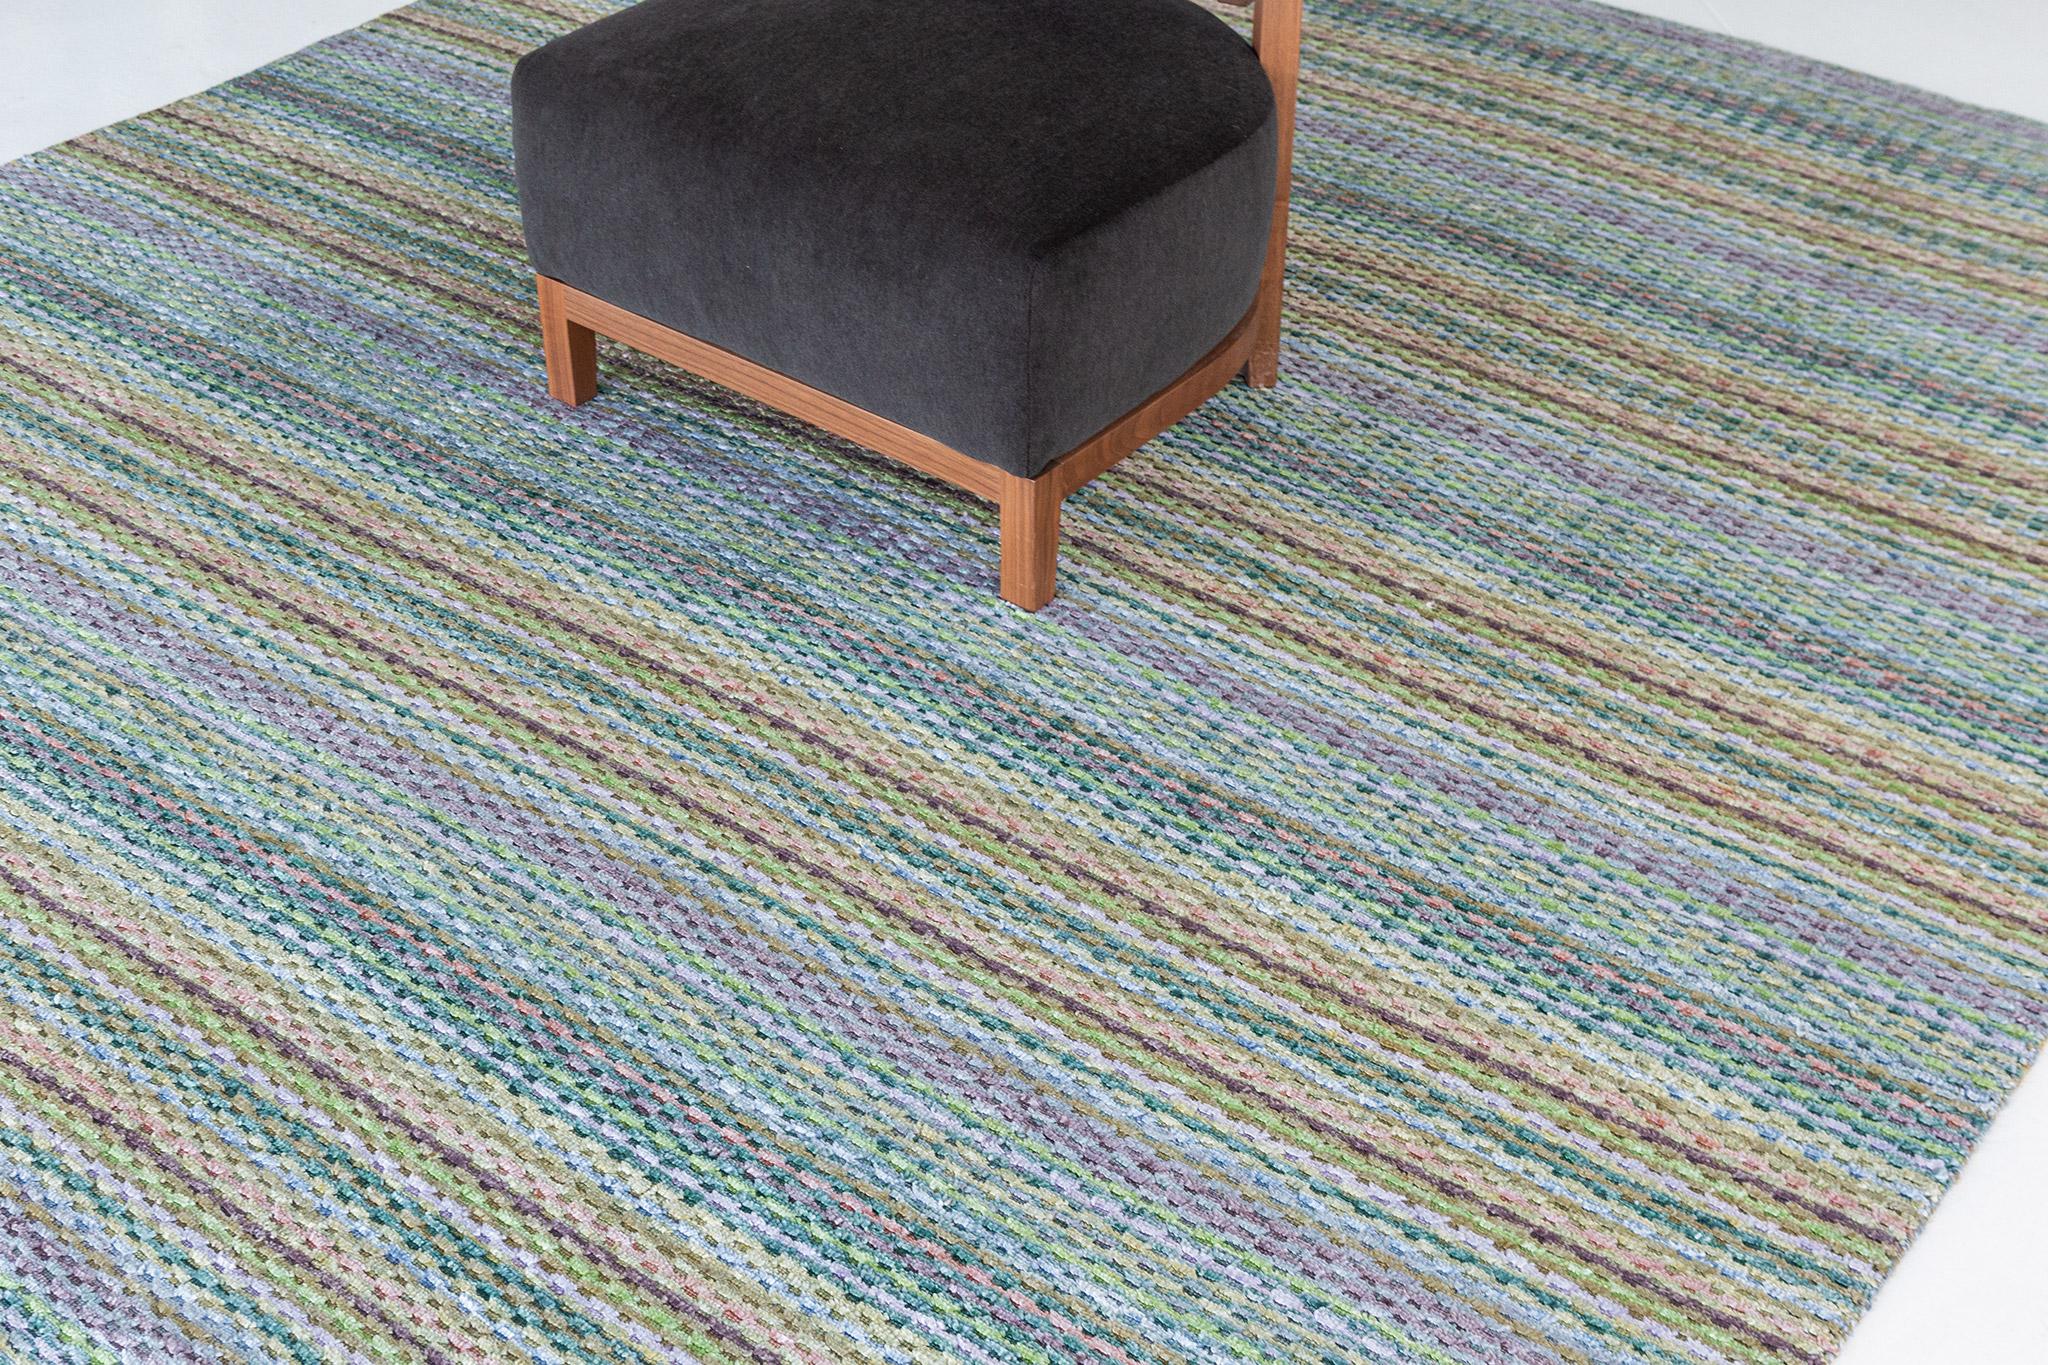 Un fascinant tapis moderne tissé à la main dans notre Collection S. Luca. Le délicat tapis de style côtelé dans des tons vibrants de vert et de jaune lui donne un air sophistiqué et festif. La répétition des détails des poils confère également à